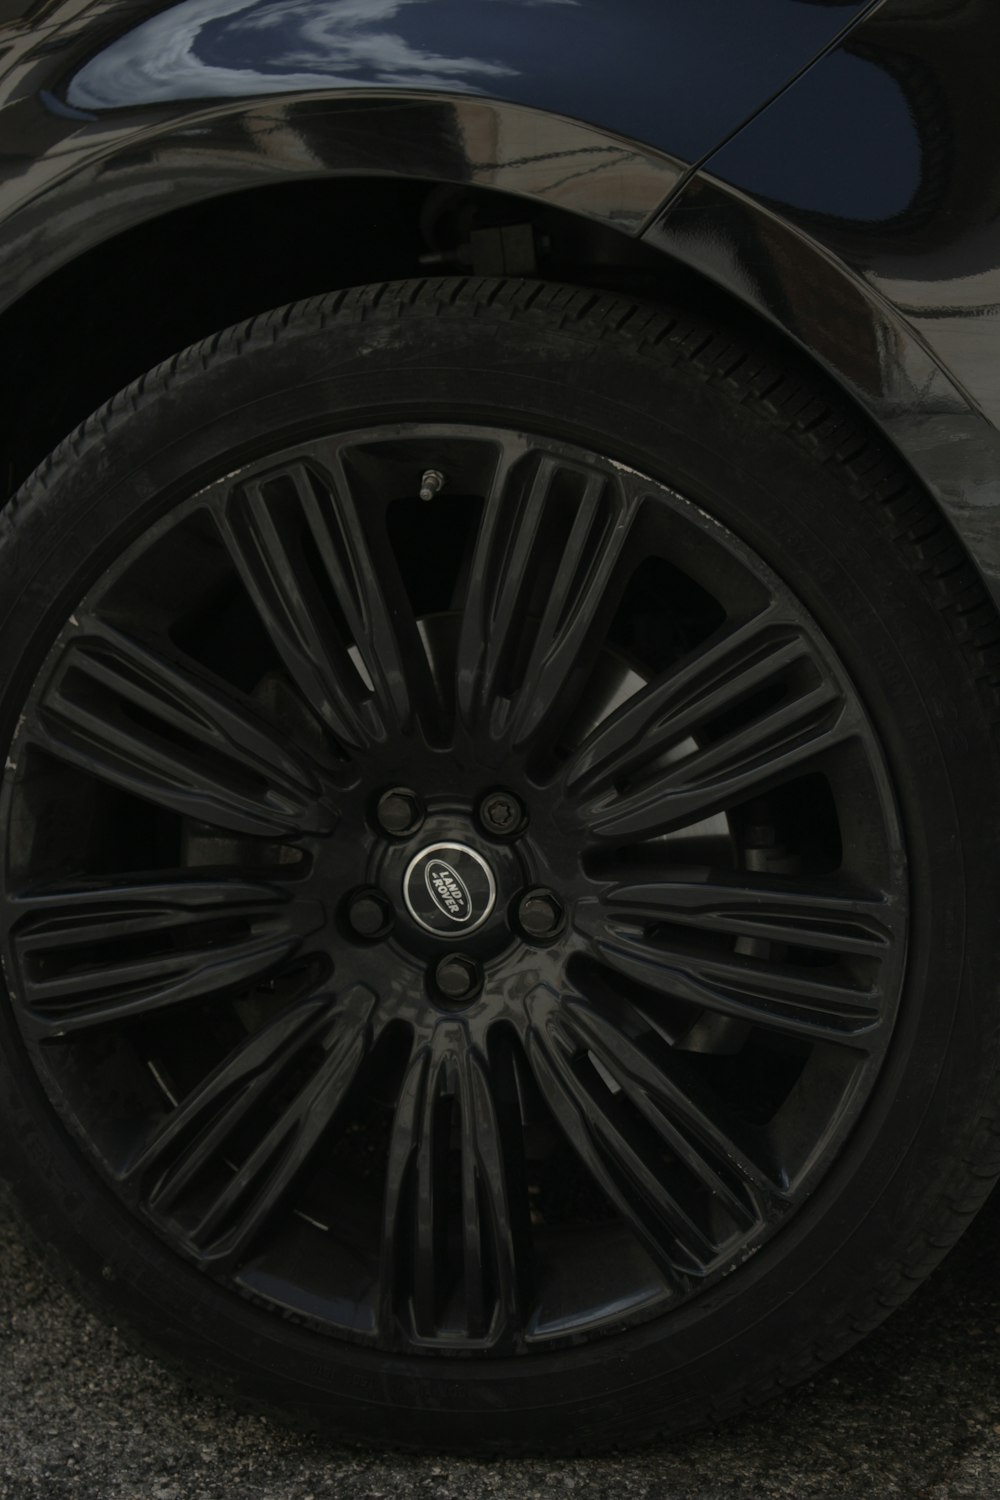 a close up of a car tire